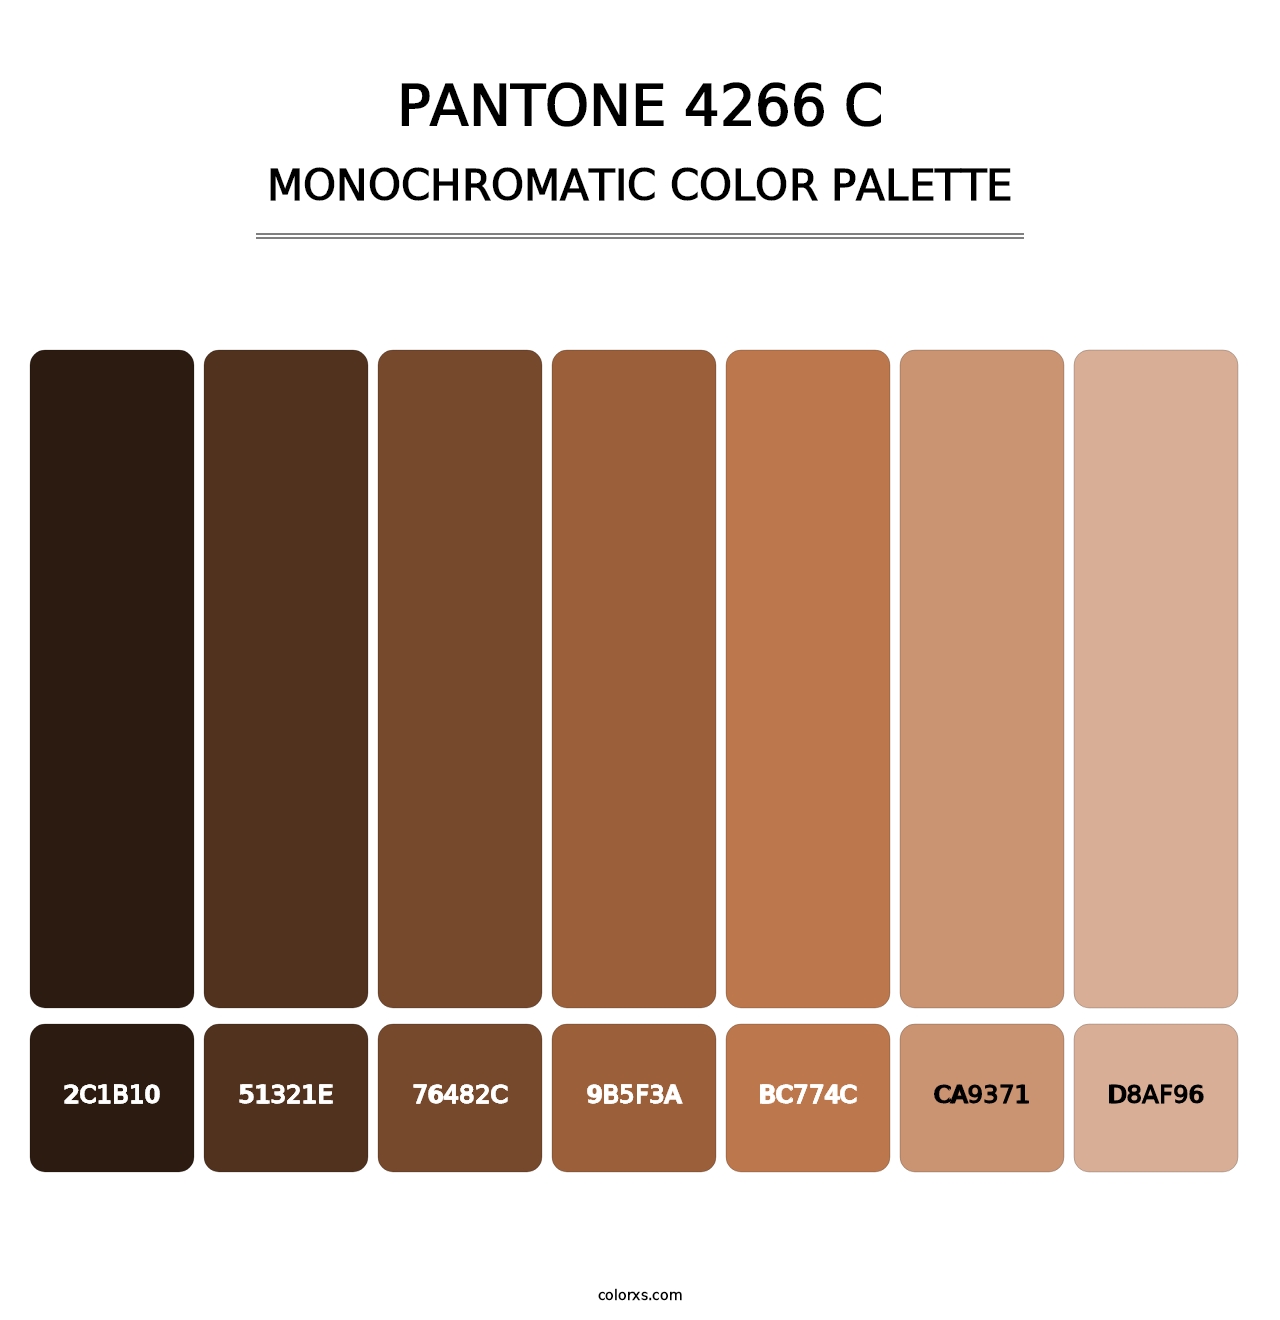 PANTONE 4266 C - Monochromatic Color Palette